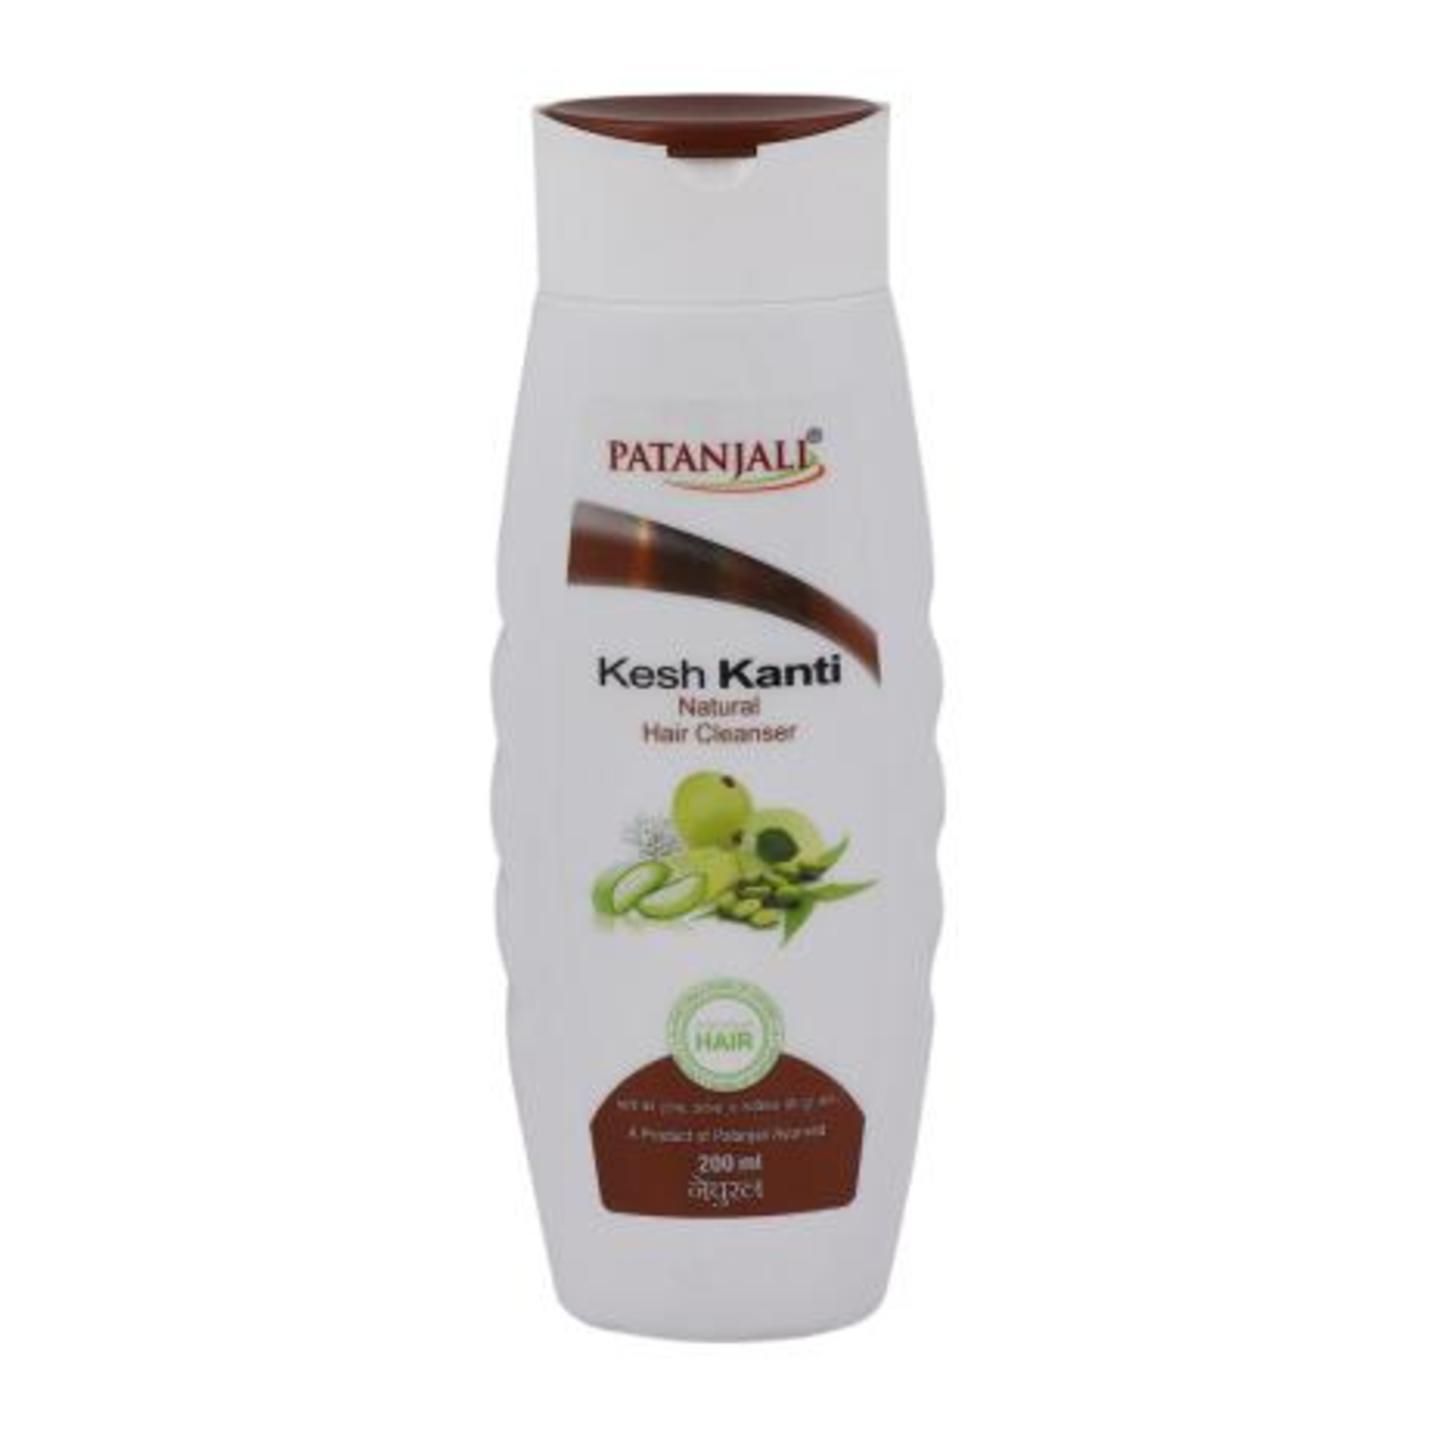 Patanjali Kesh Kanti Natural Hair Shampoo 200 ml  PMBM